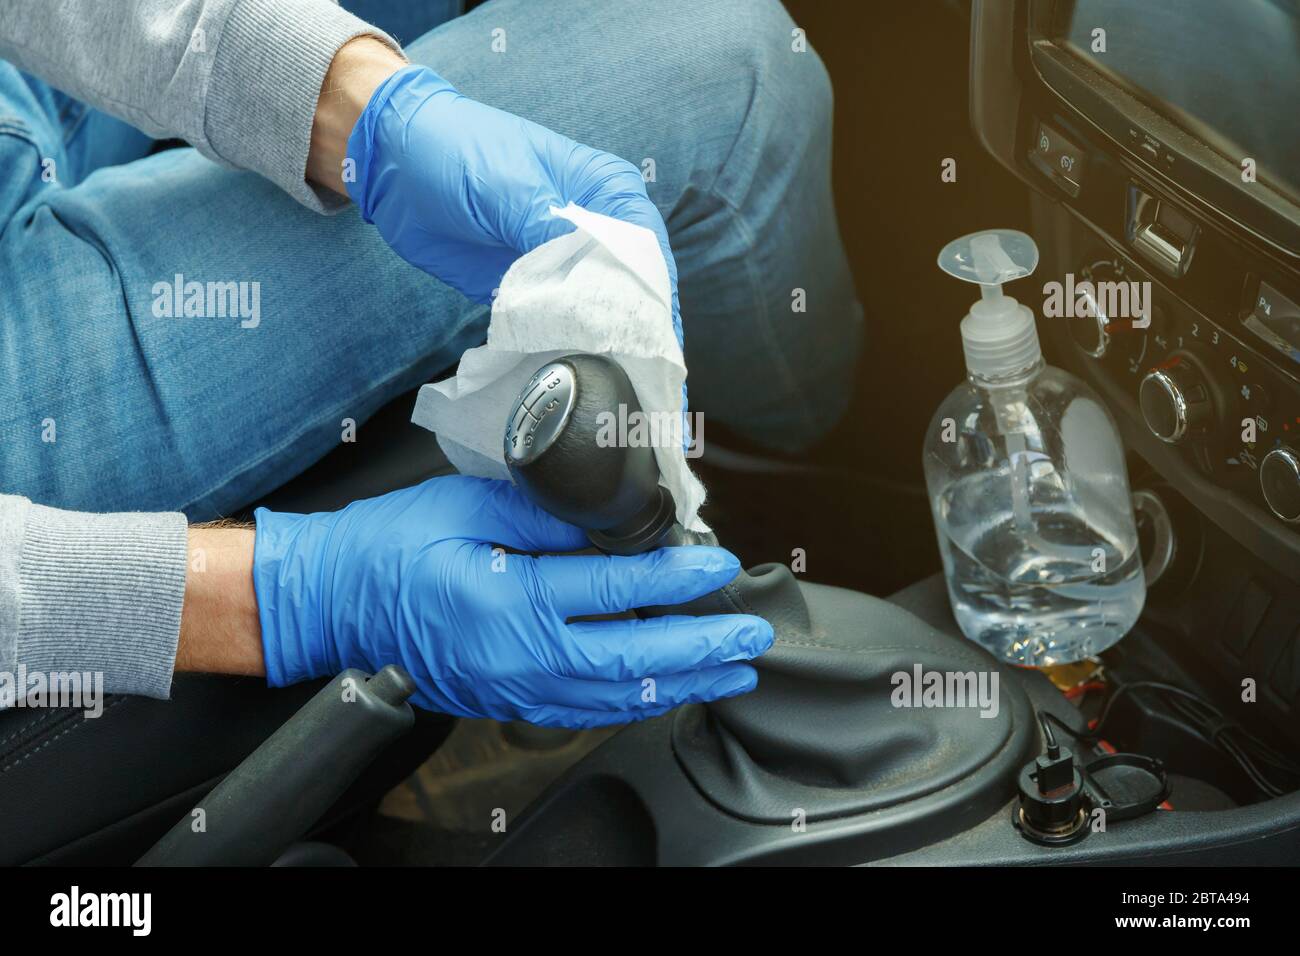 Désinfection automobile. Un homme en gants et un masque essuie le levier de vitesses avec un désinfectant. Banque D'Images